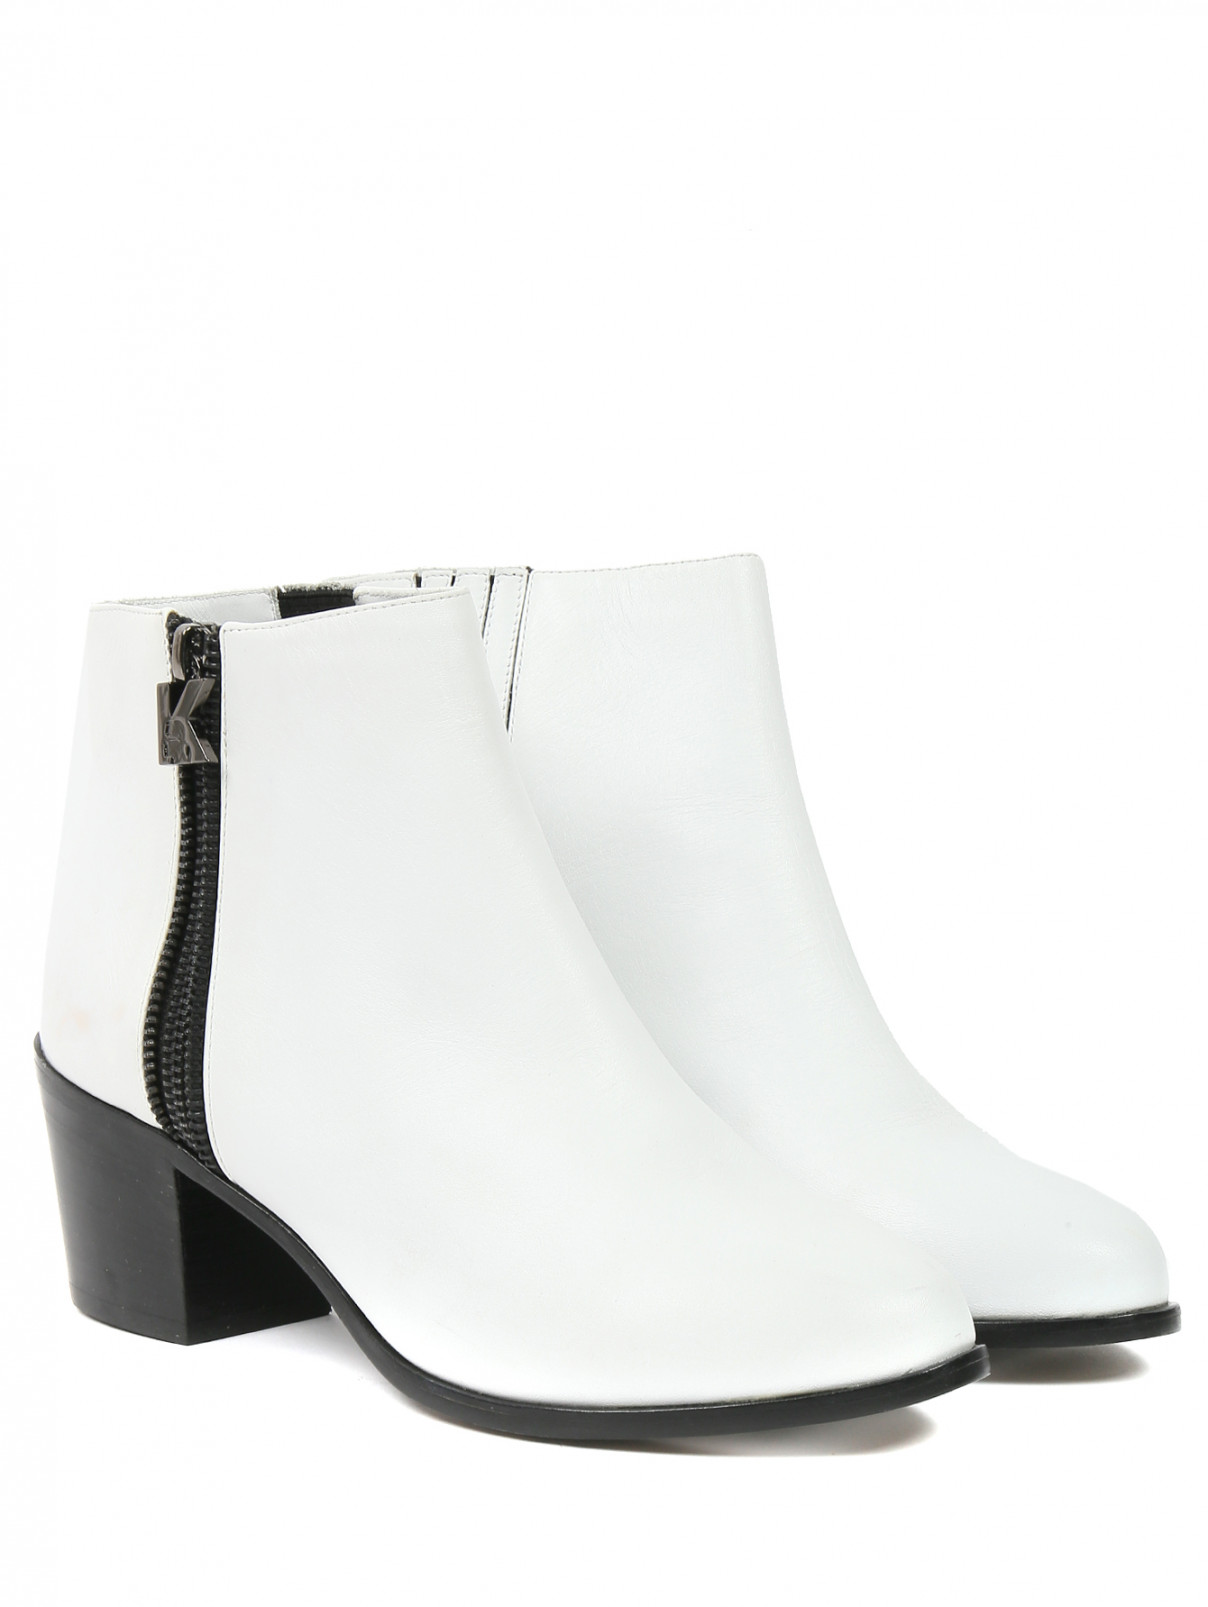 Ботинки из кожи на молнии Karl Lagerfeld  –  Общий вид  – Цвет:  Белый